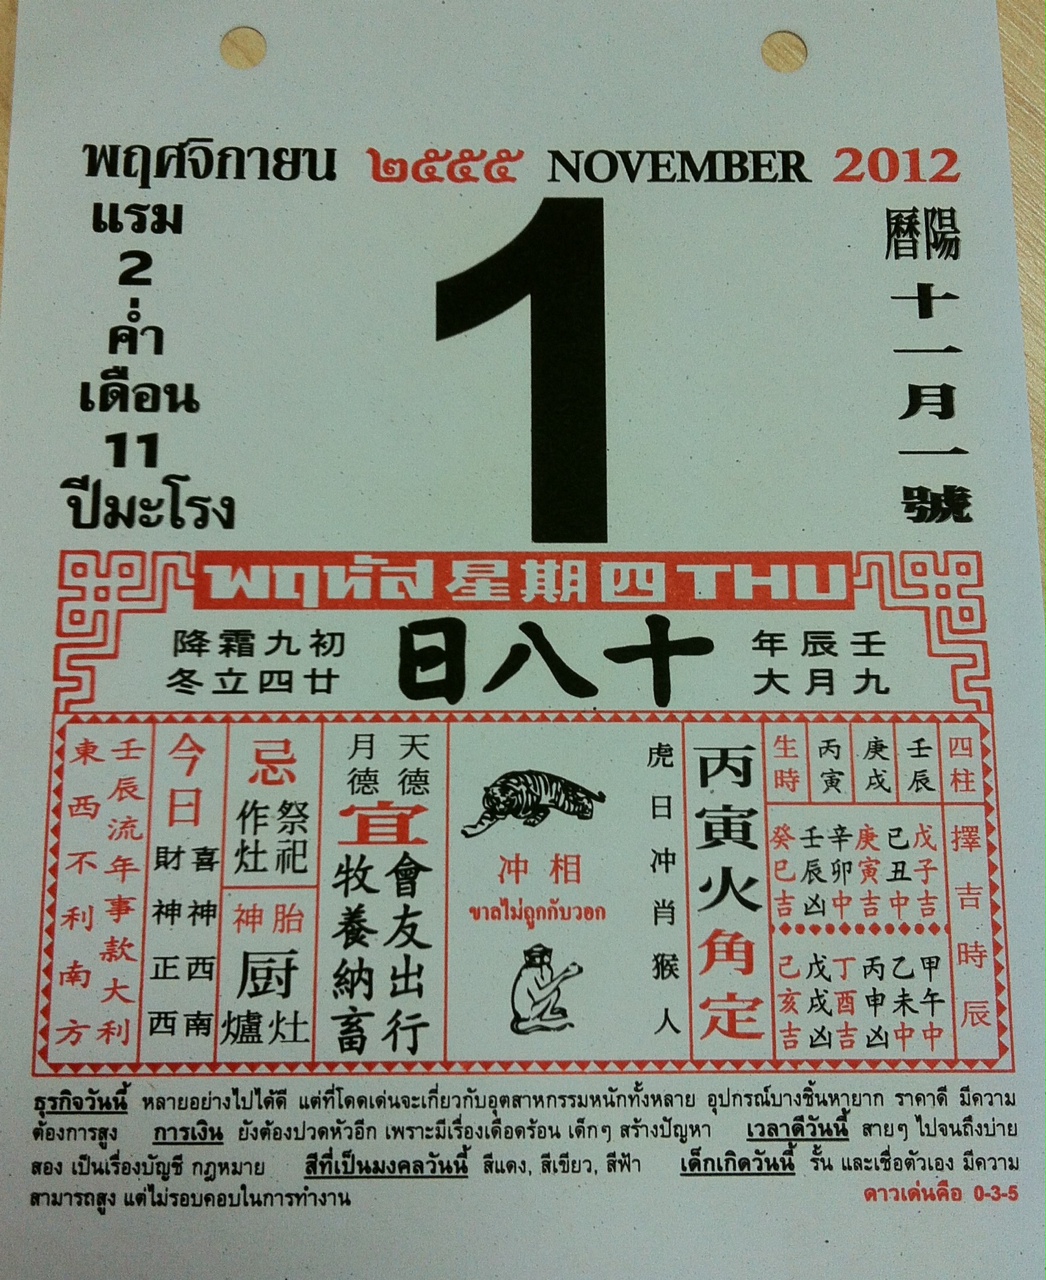 ปฎิทินจีนเลขมงคล วันที่ 01-11-2012